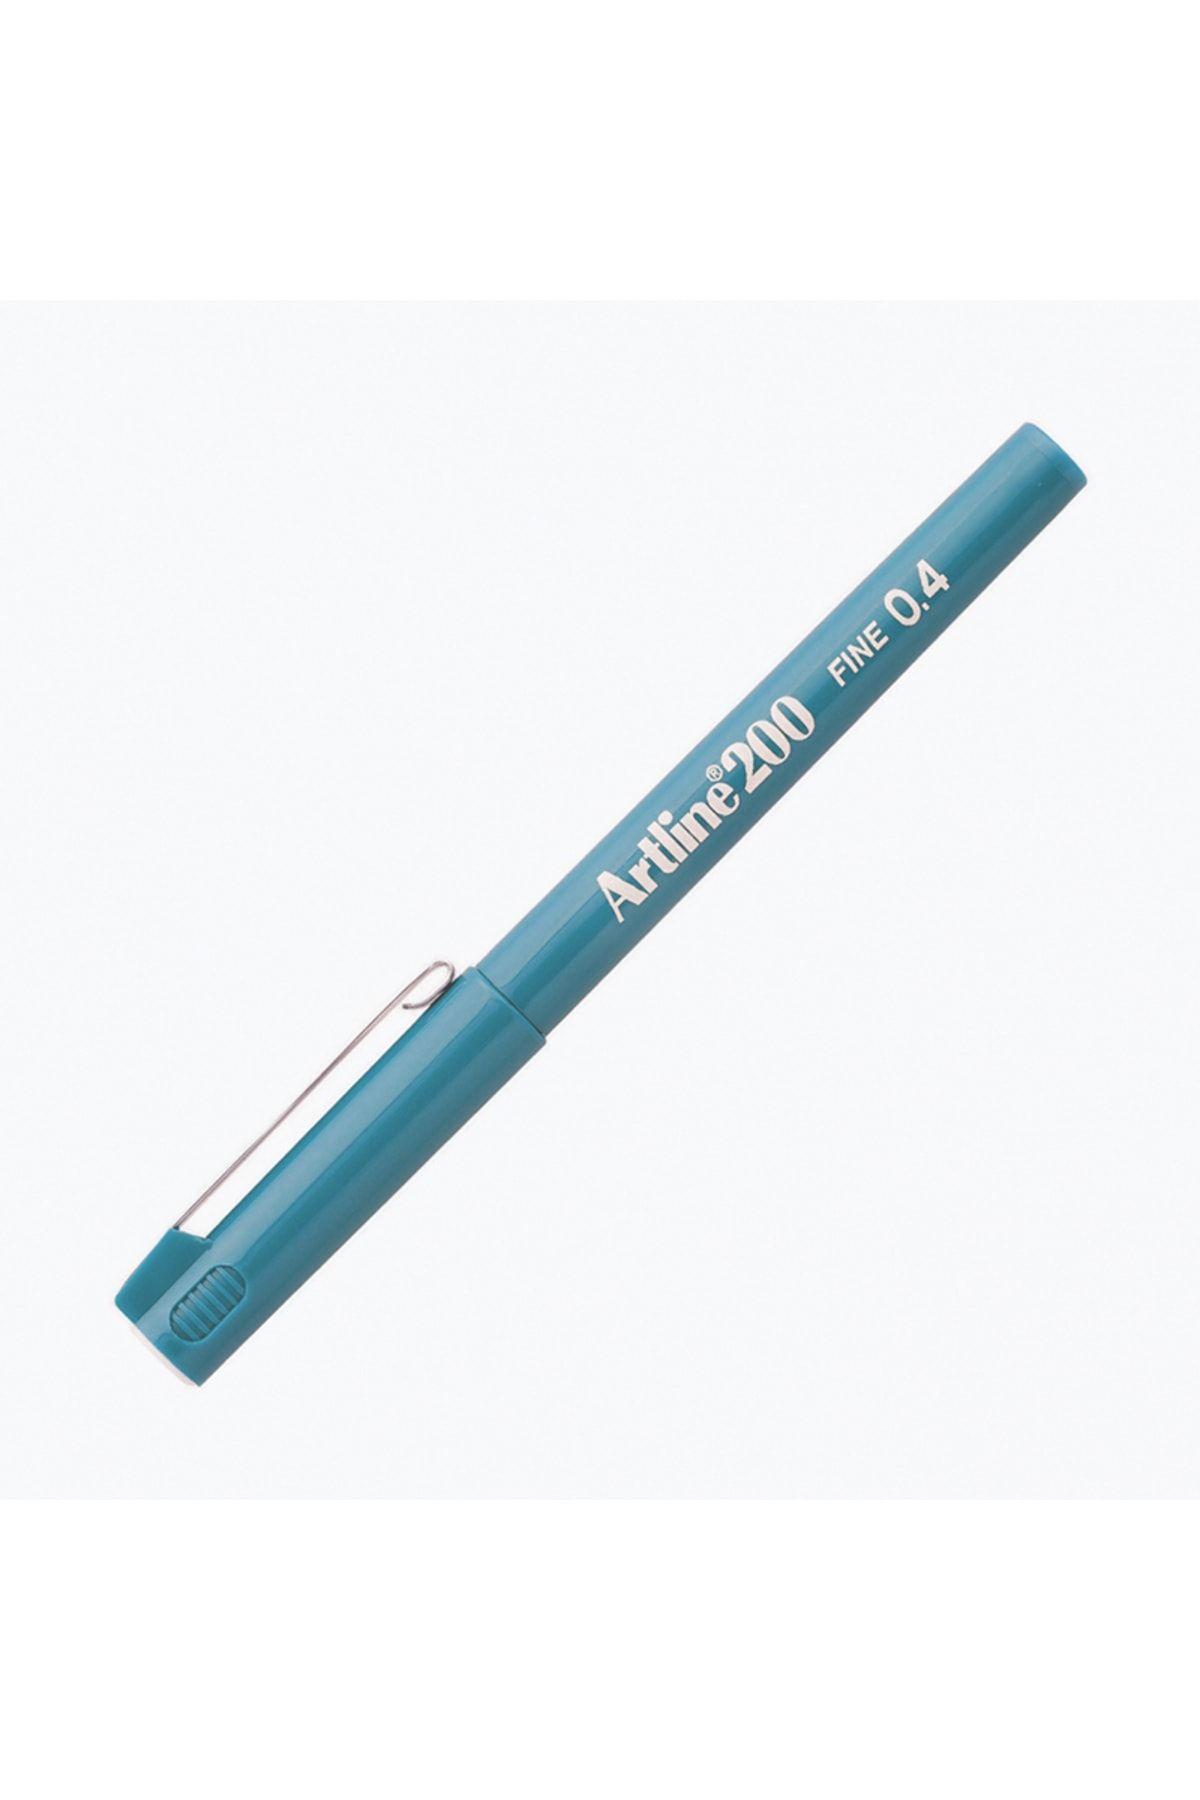 artline 200 Fineliner Yazı Ve Çizim Kalemi 0,4mm Açık Mavi